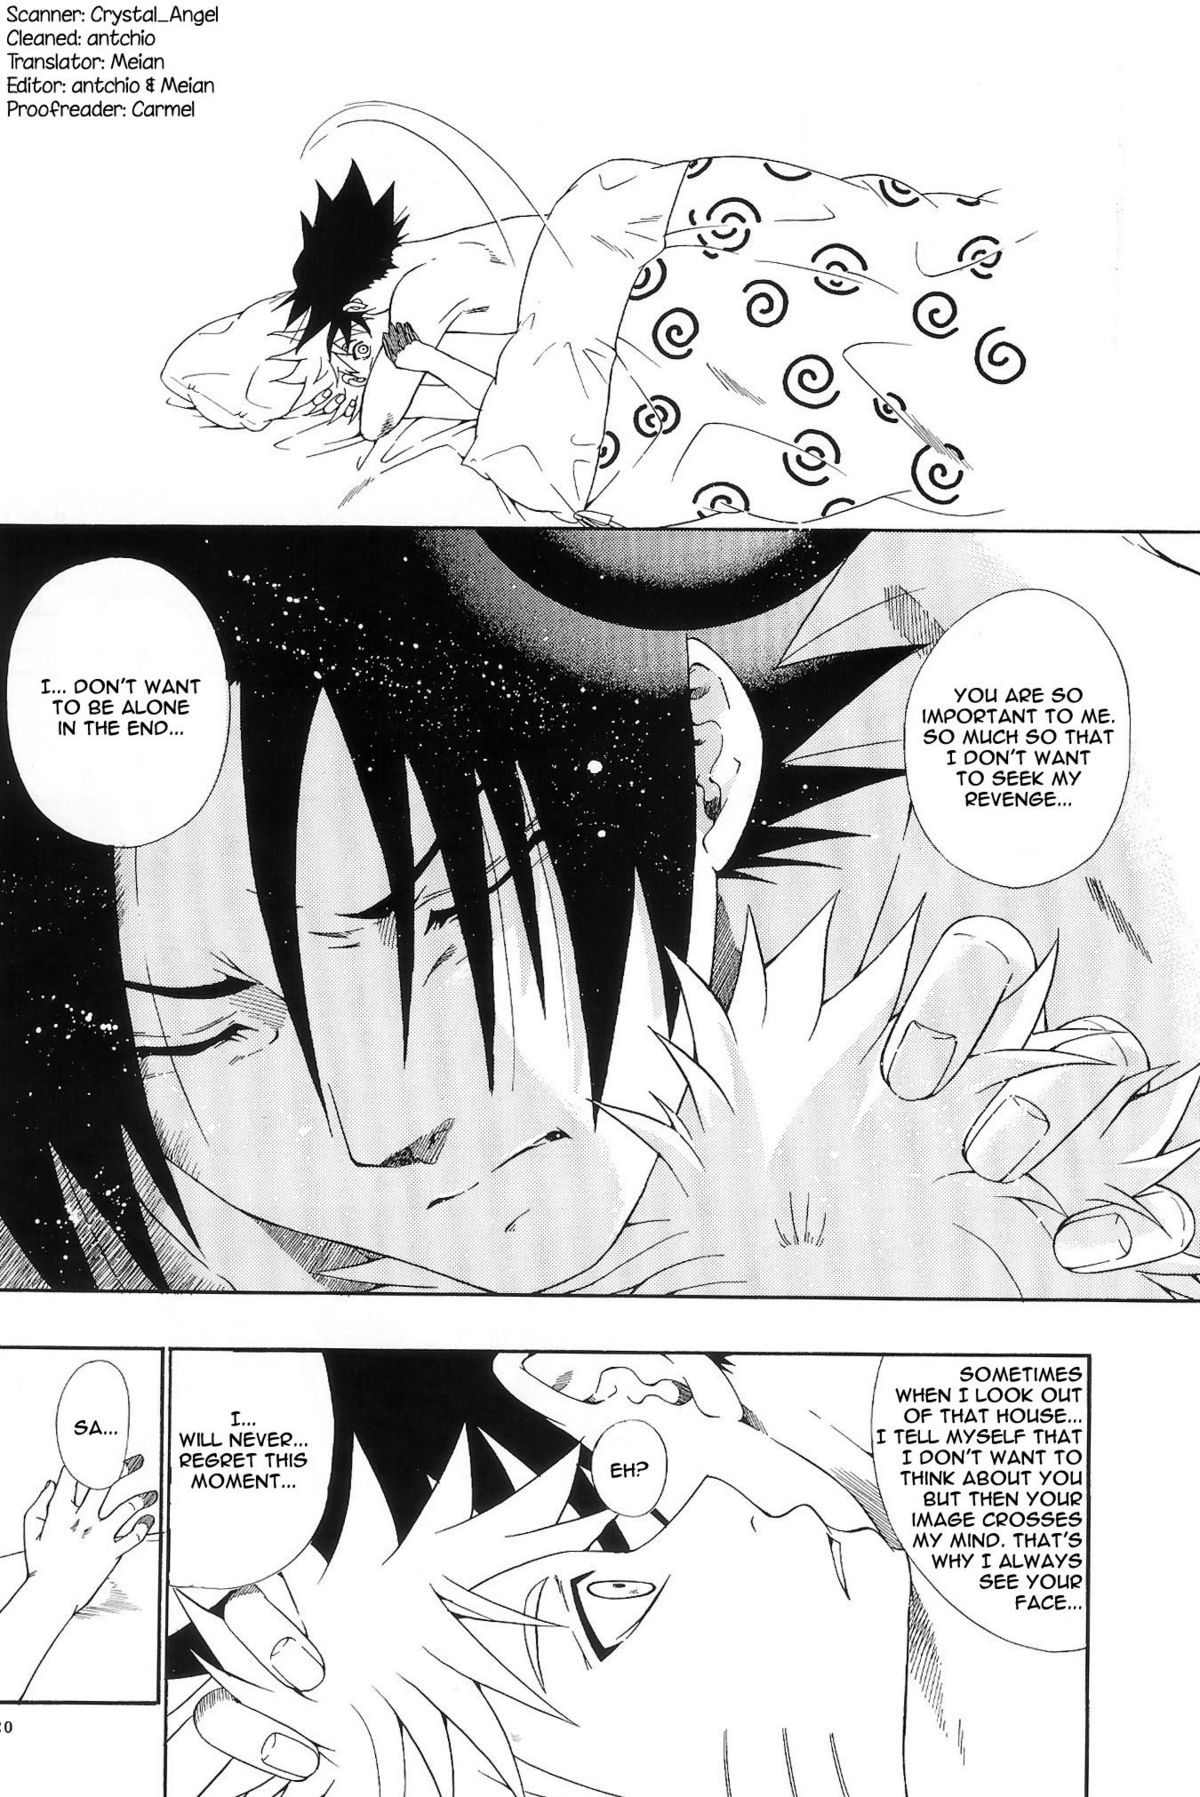 ERO ERO²: Volume 1.5  (NARUTO) [Sasuke X Naruto] YAOI -ENG- page 19 full